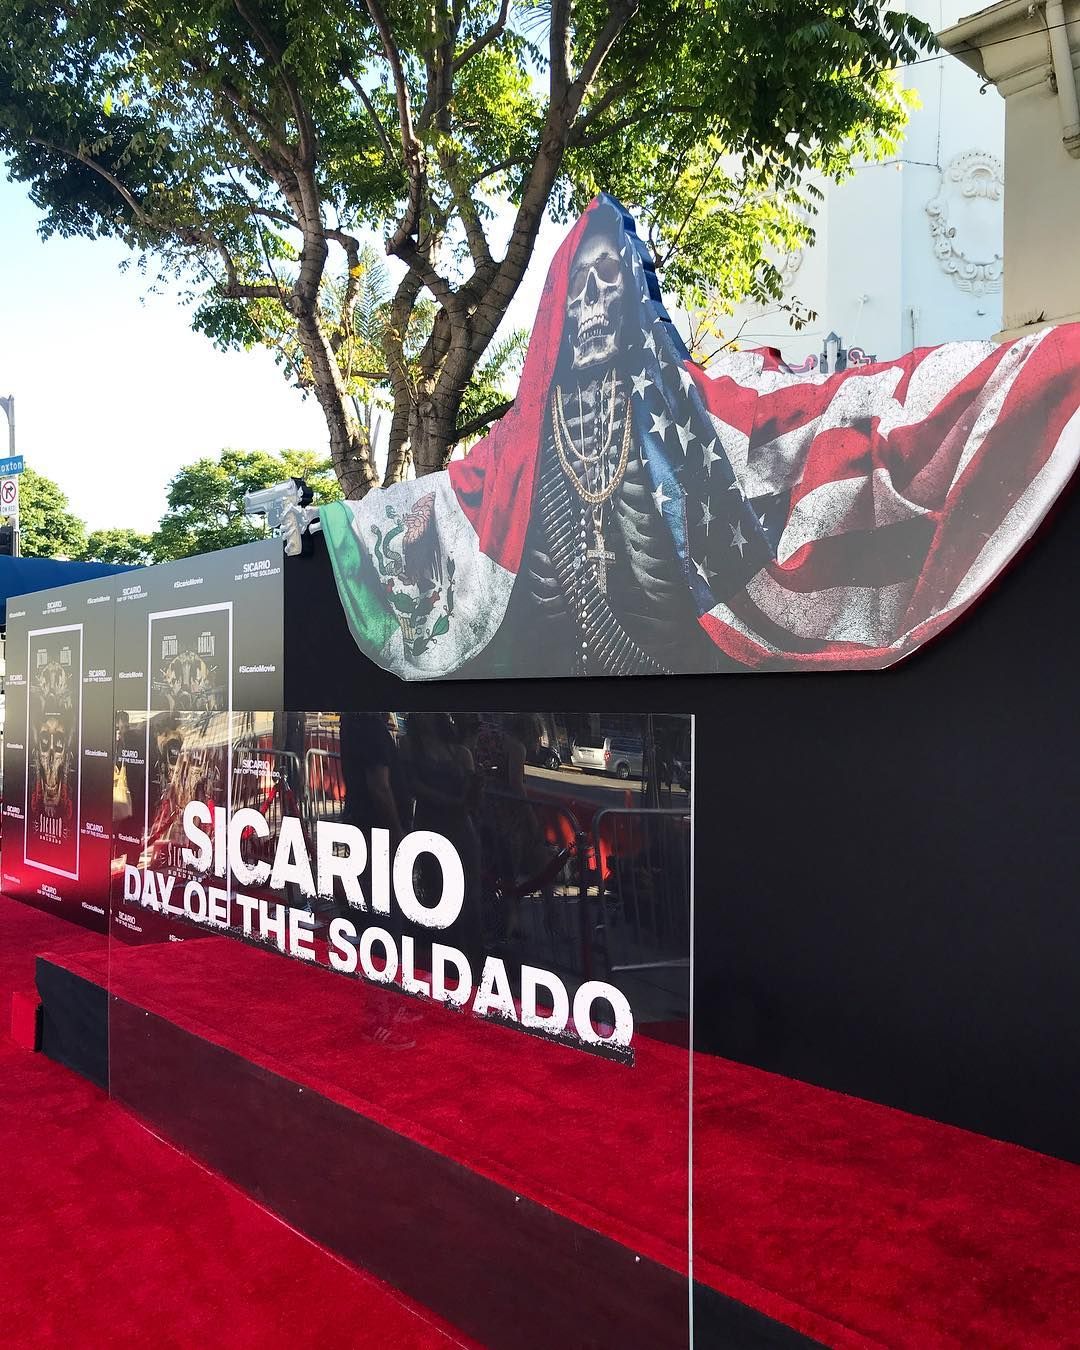 Promo Sicario: Day of the Saldado